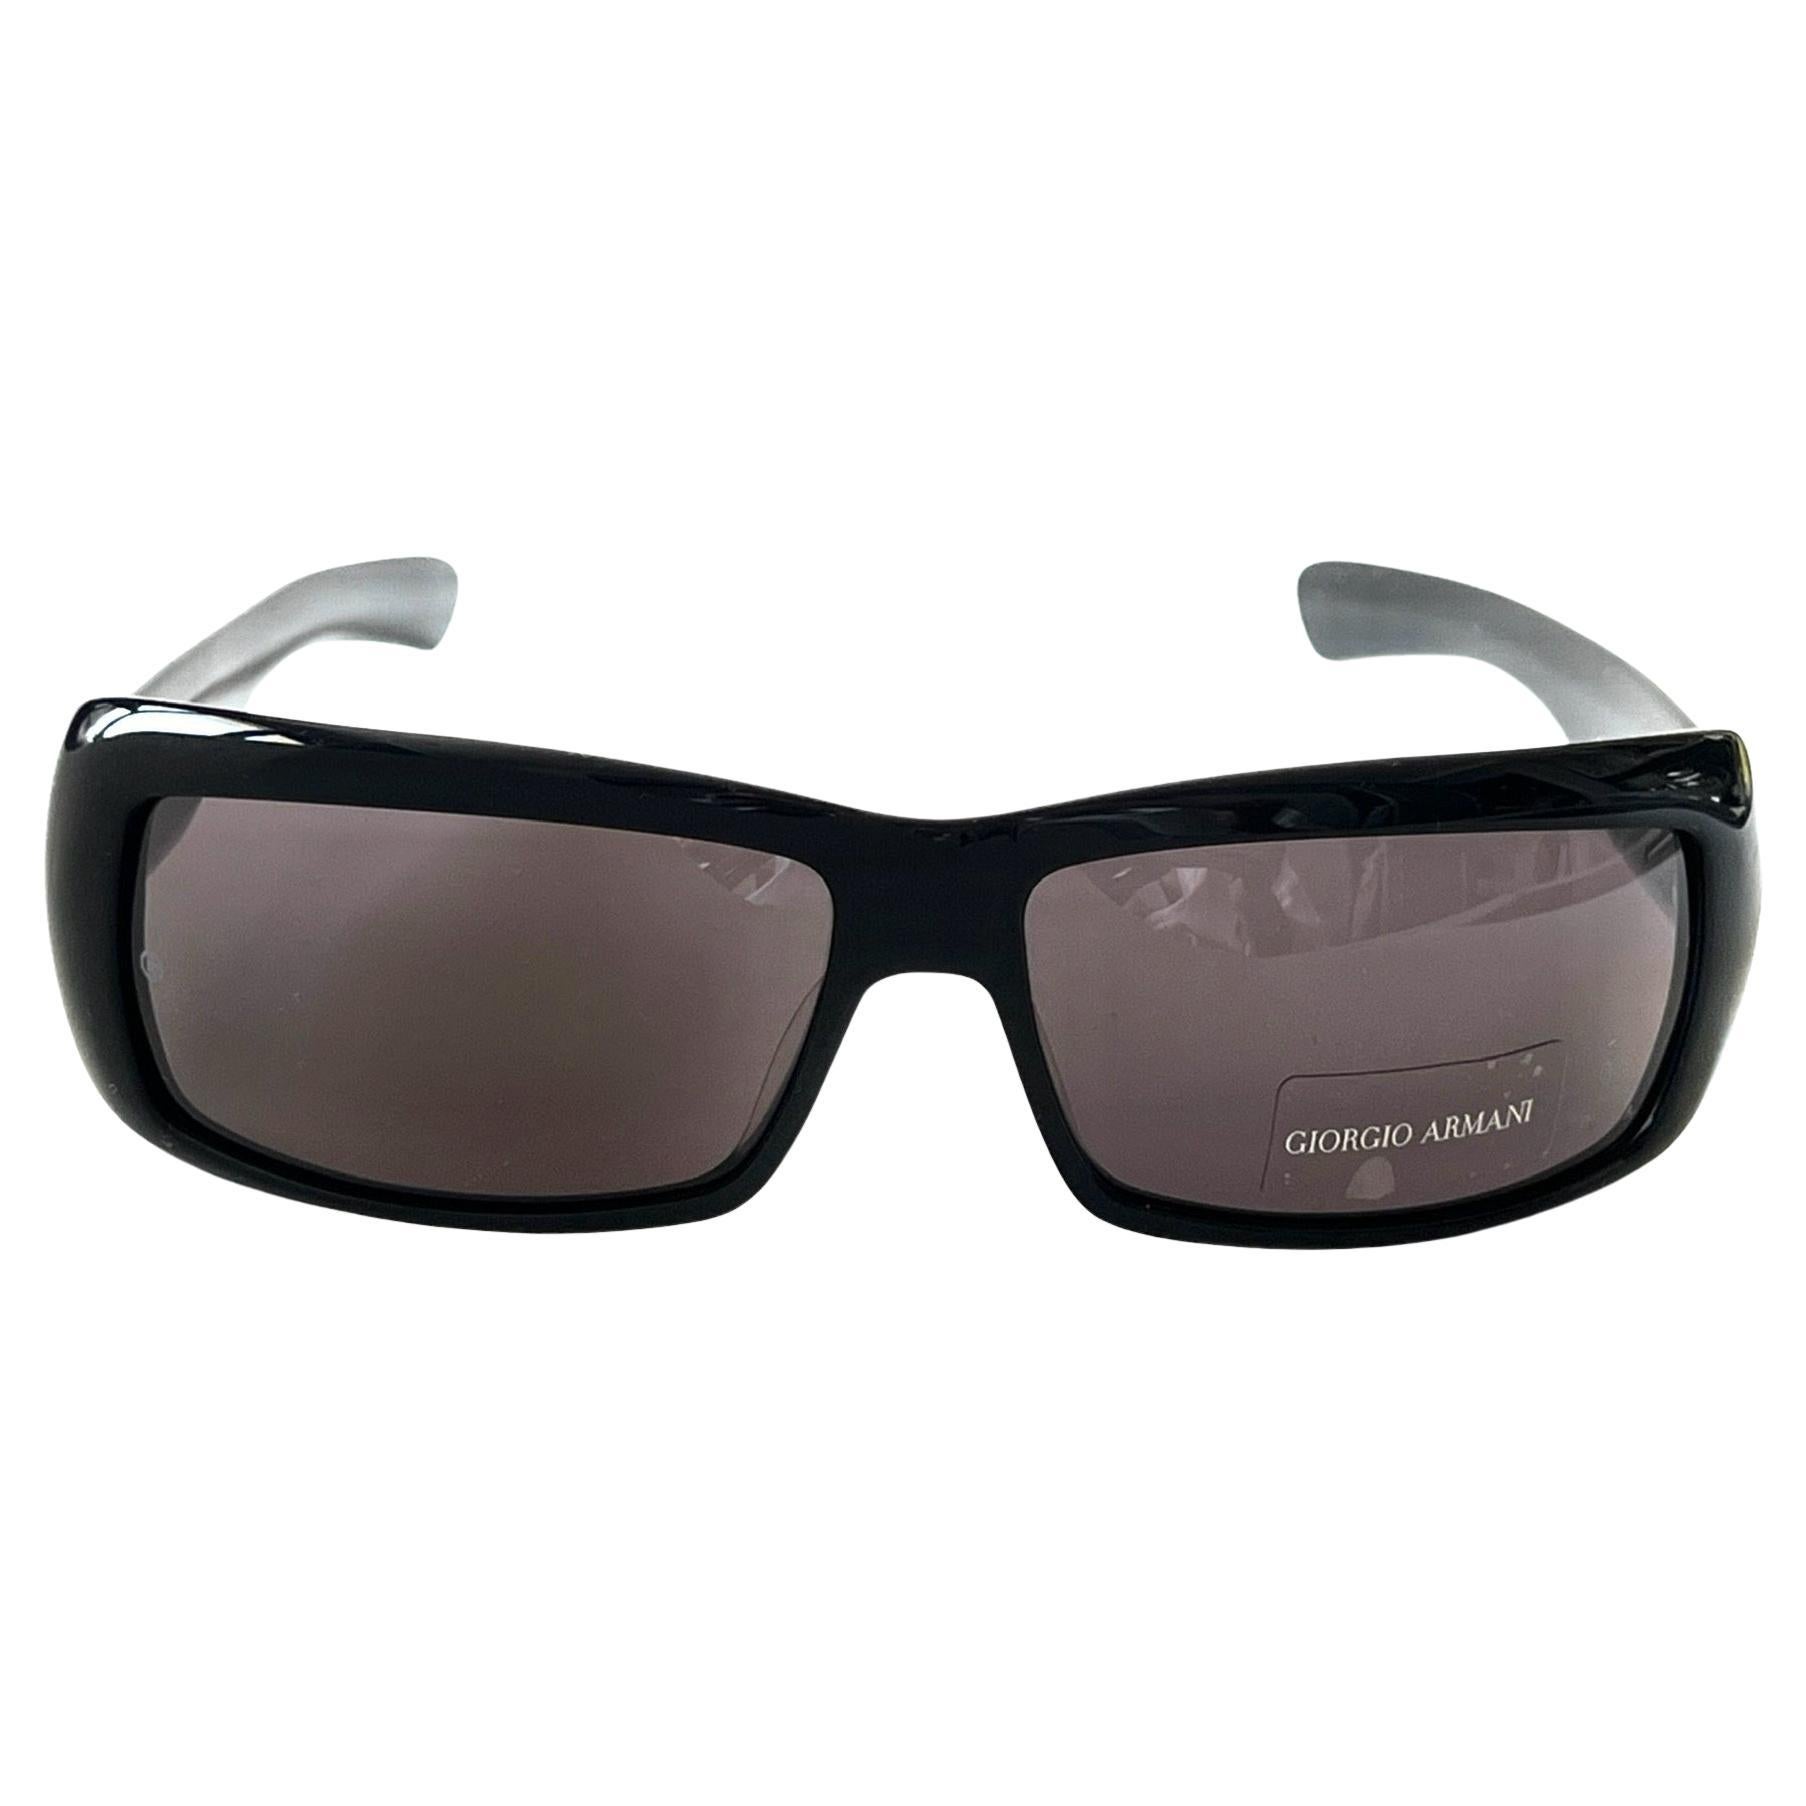 Giorgio Armani New sunglasses  art. 54/N/S col. 807BN (Made in Italy)  For Sale